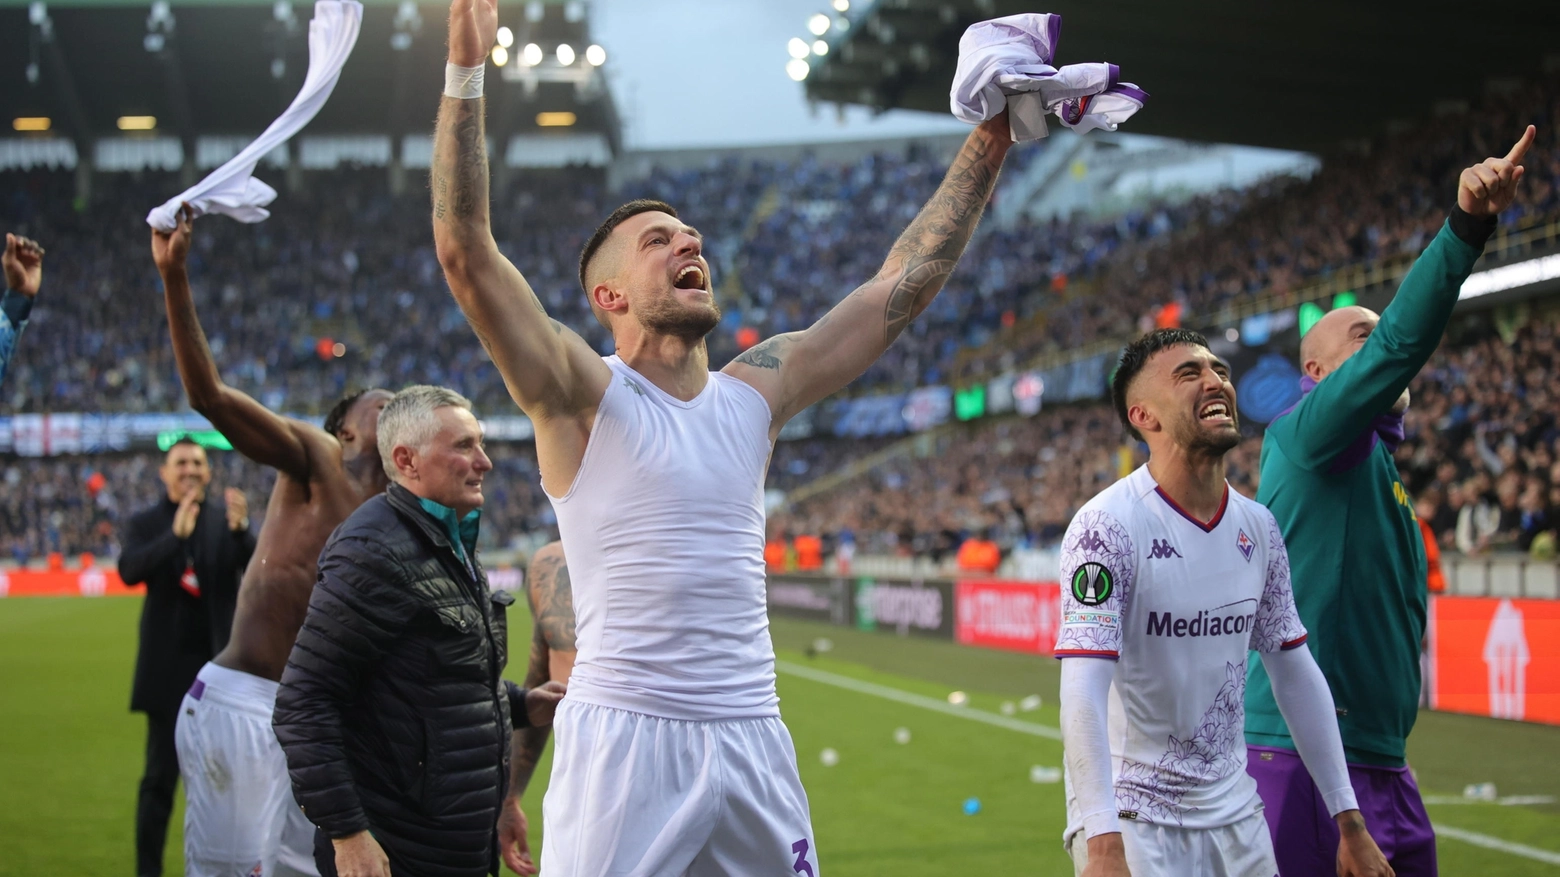 Il tecnico della Fiorentina è raggiante nel dopo partita. La sua squadra andrà a giocare un'altra finale il prossimo 29 maggio ad Atene